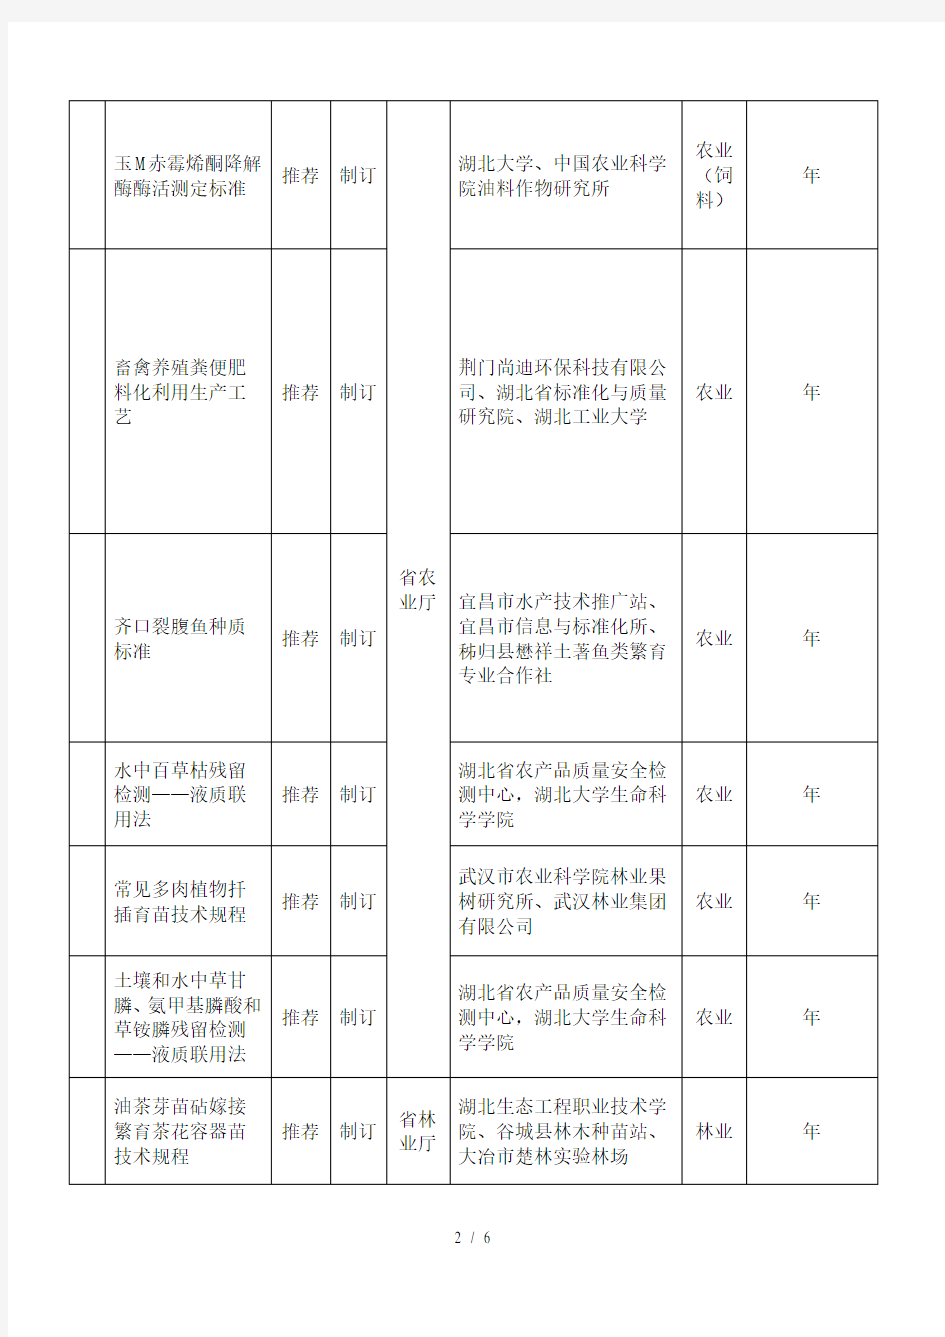 2018年度湖北省地方标准制修订项目计划表